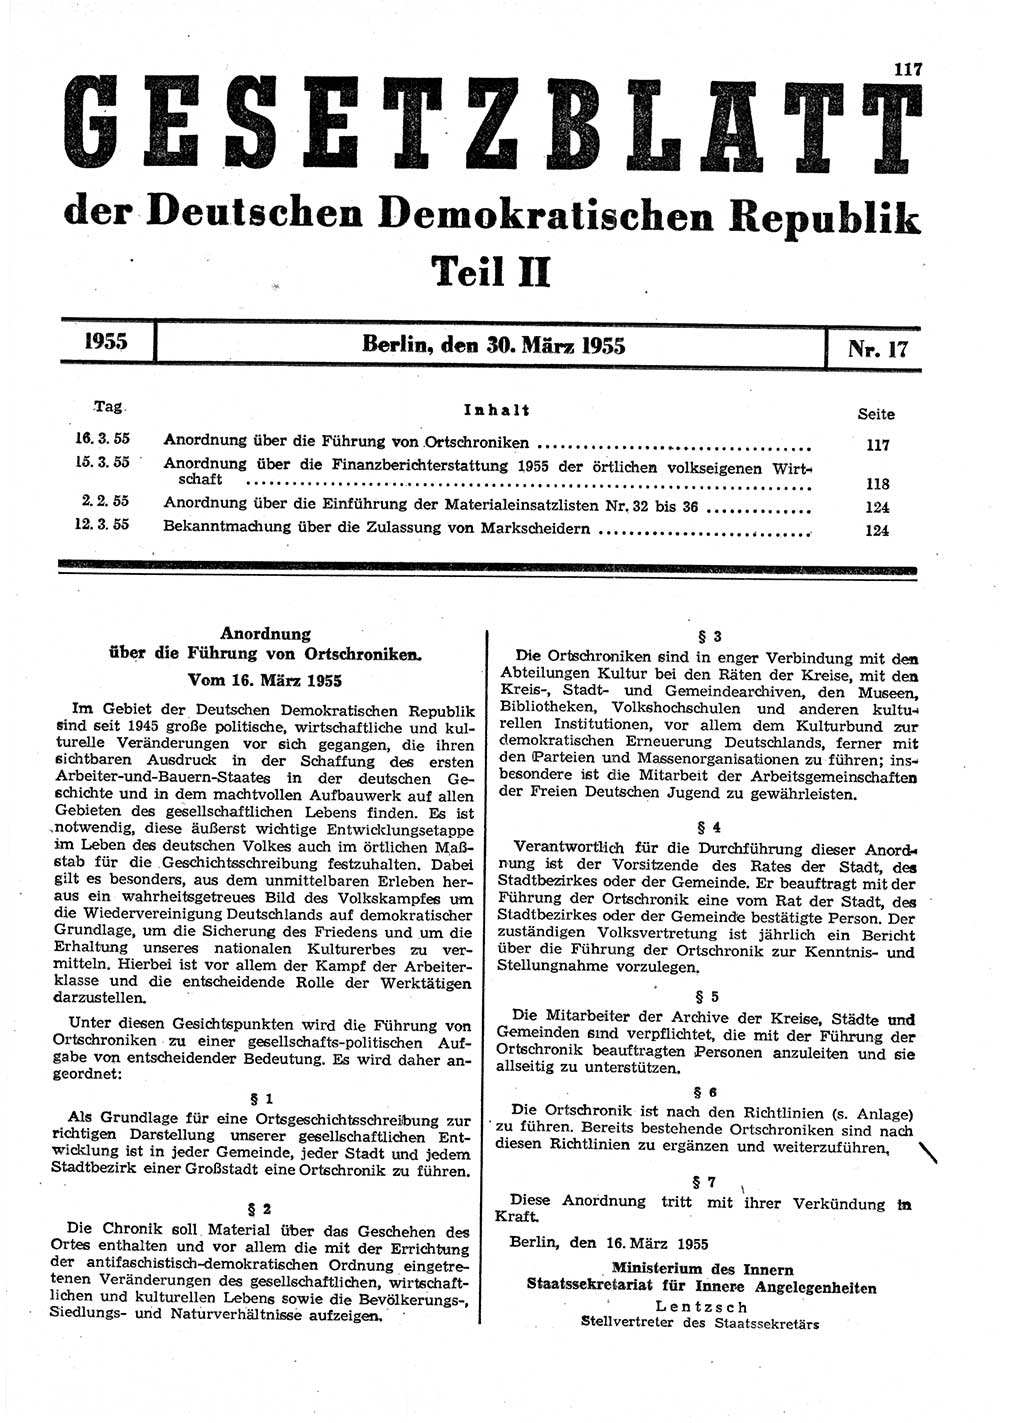 Gesetzblatt (GBl.) der Deutschen Demokratischen Republik (DDR) Teil ⅠⅠ 1955, Seite 117 (GBl. DDR ⅠⅠ 1955, S. 117)